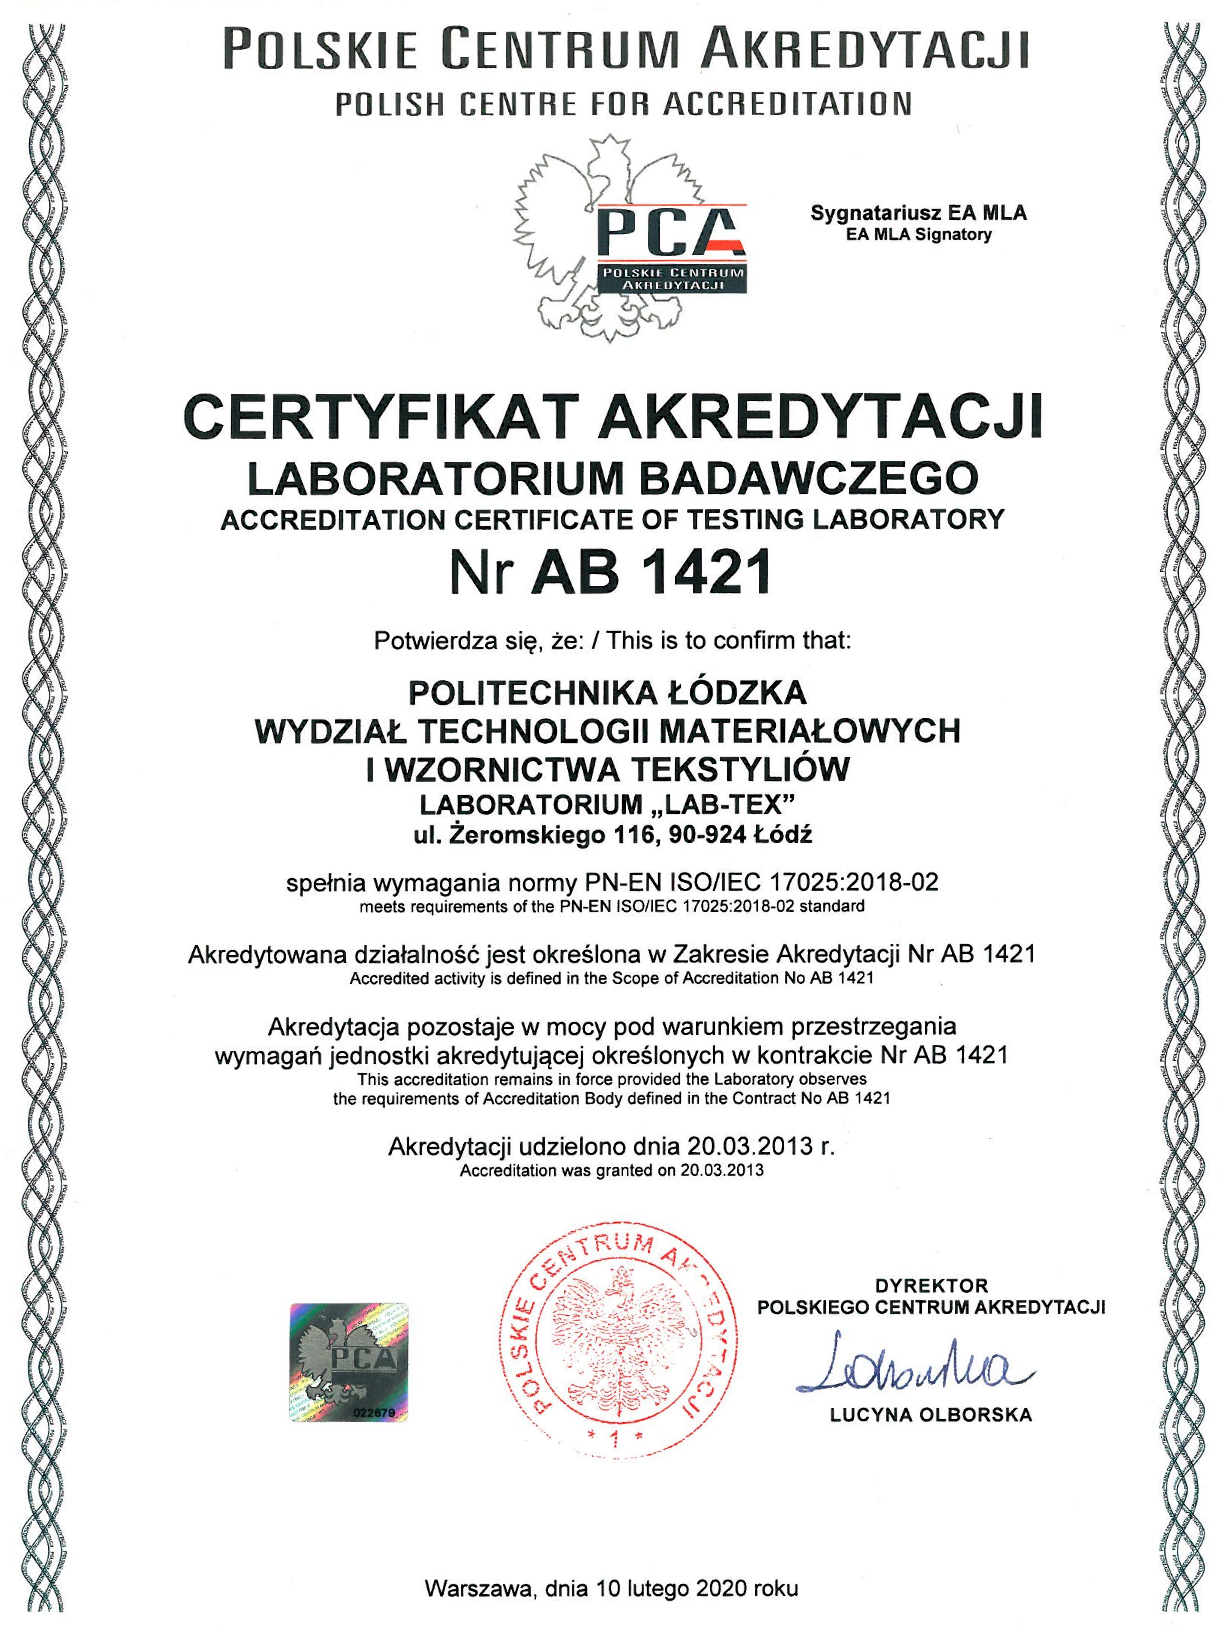 Certyfikat akredytacji LAB-TEX